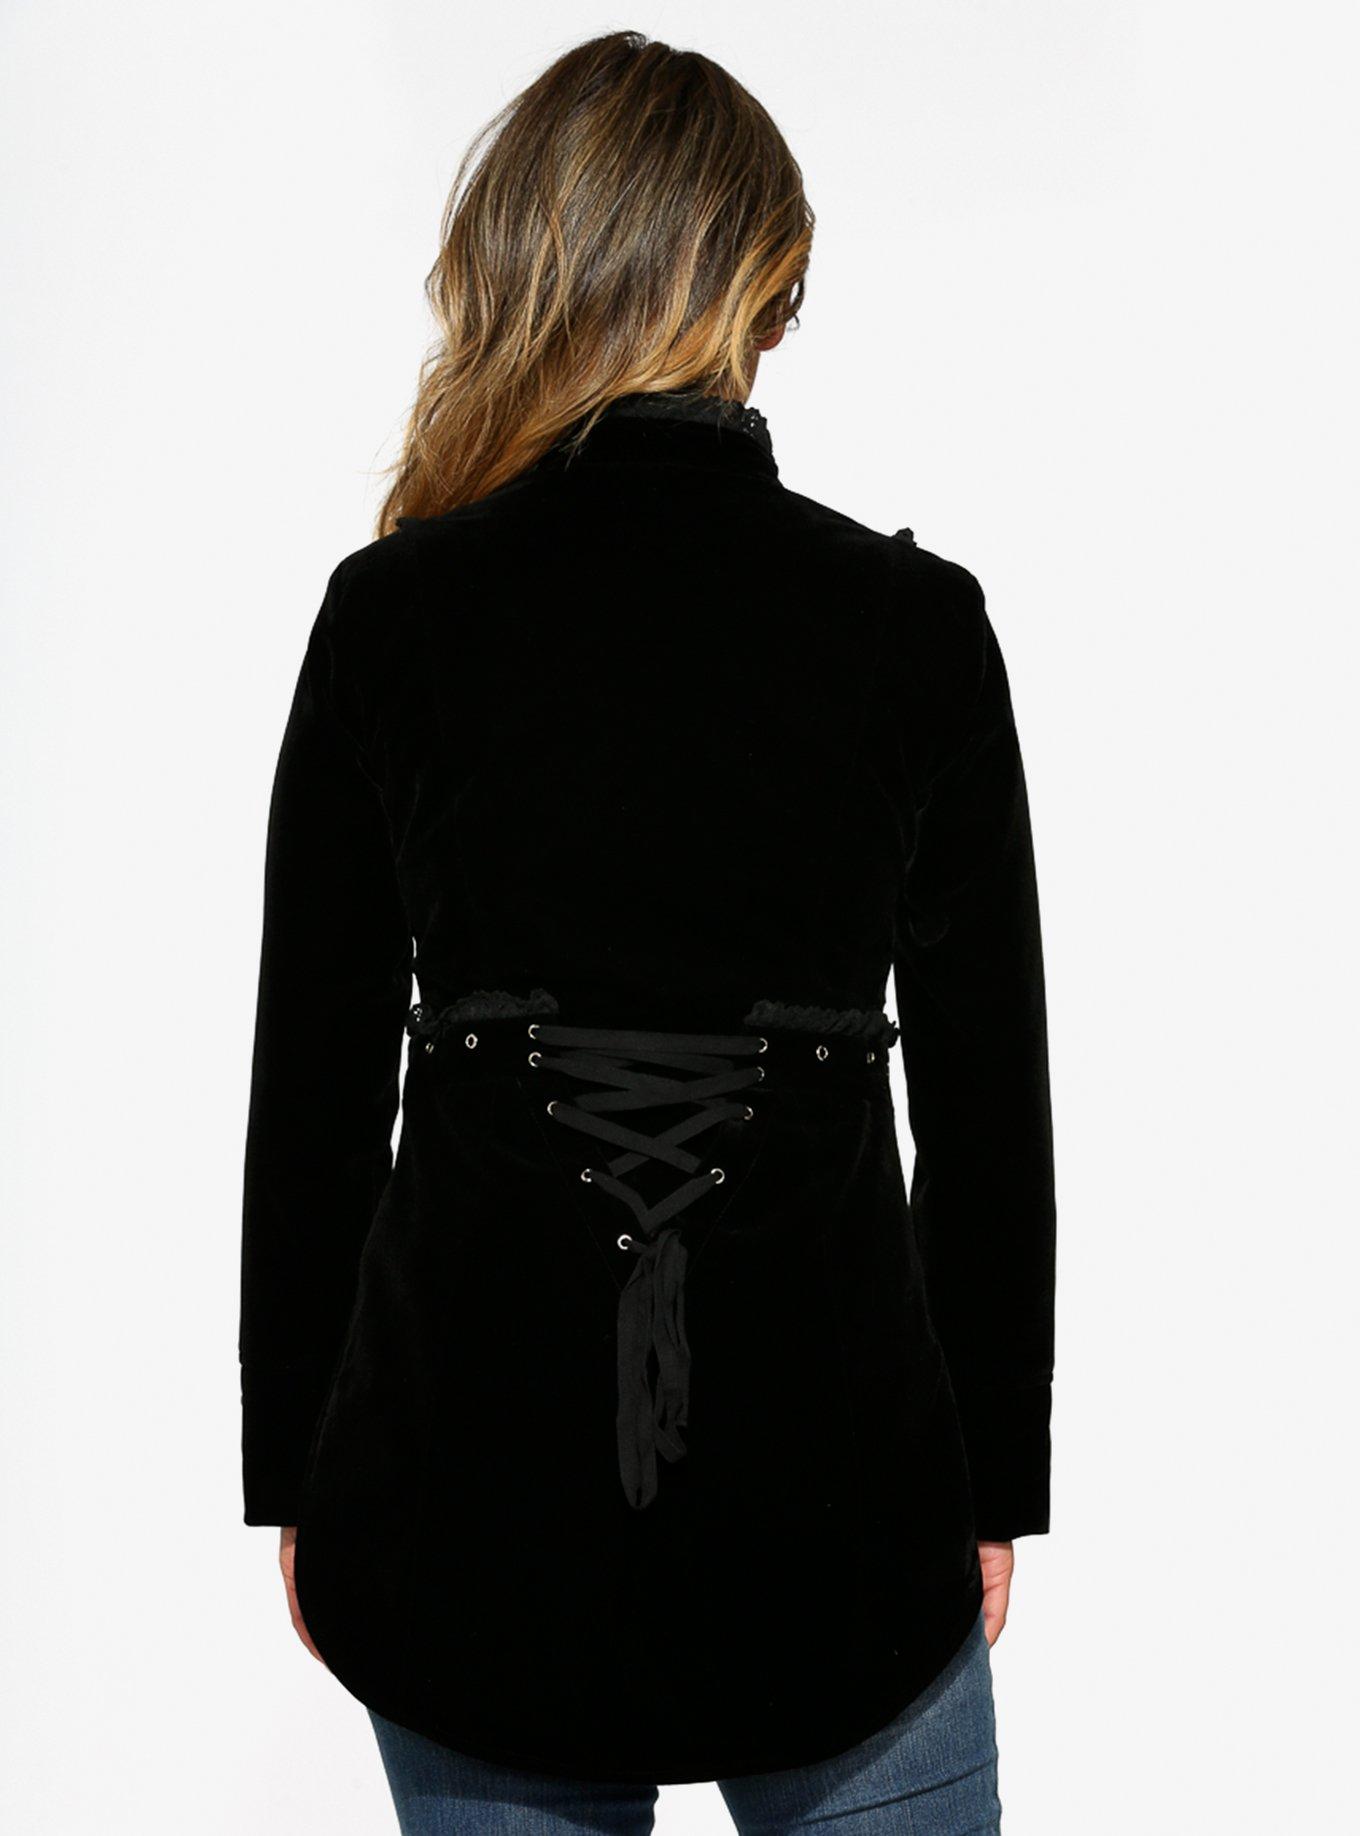 Black Velvet Tailed Jacket